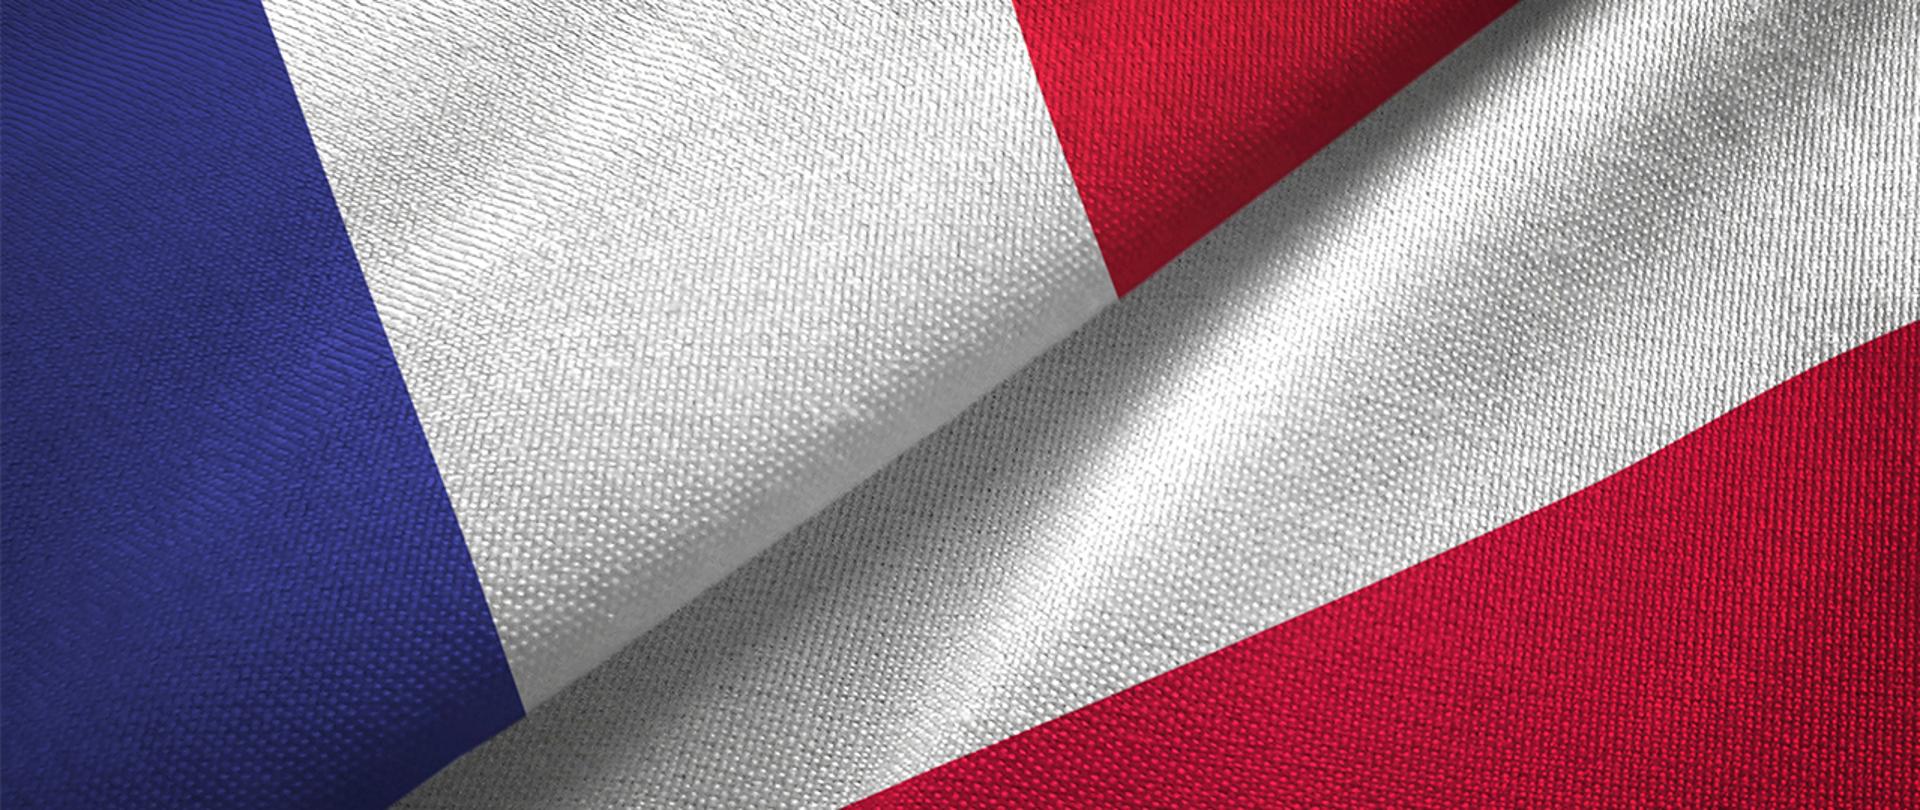 Flagi Polski i Francji